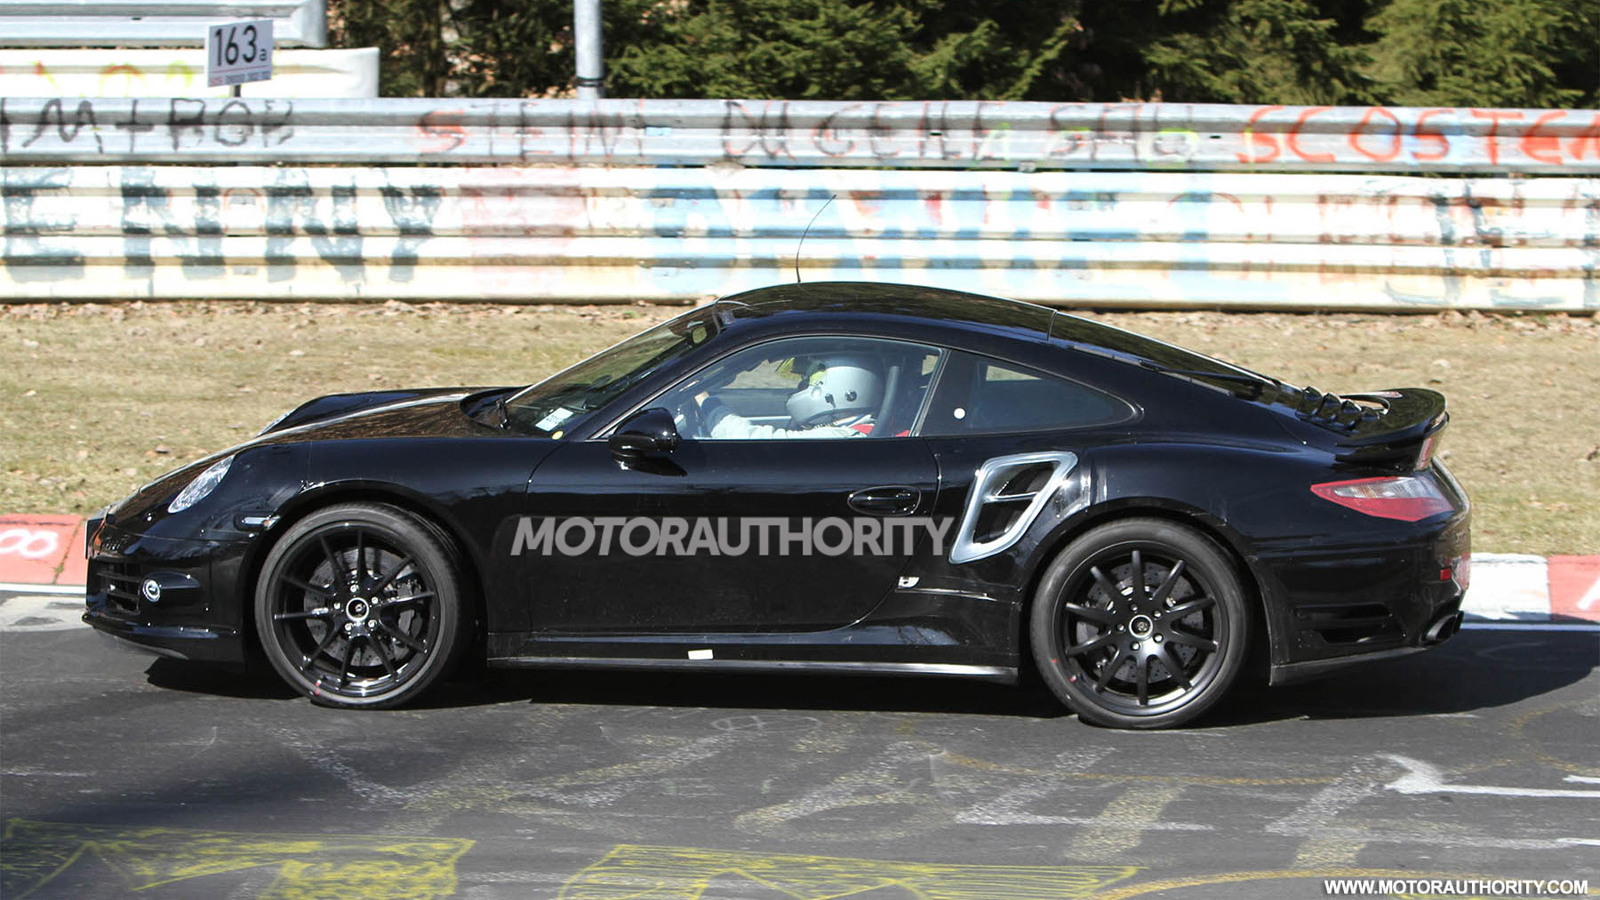 2014 Porsche 911 Turbo spy shots